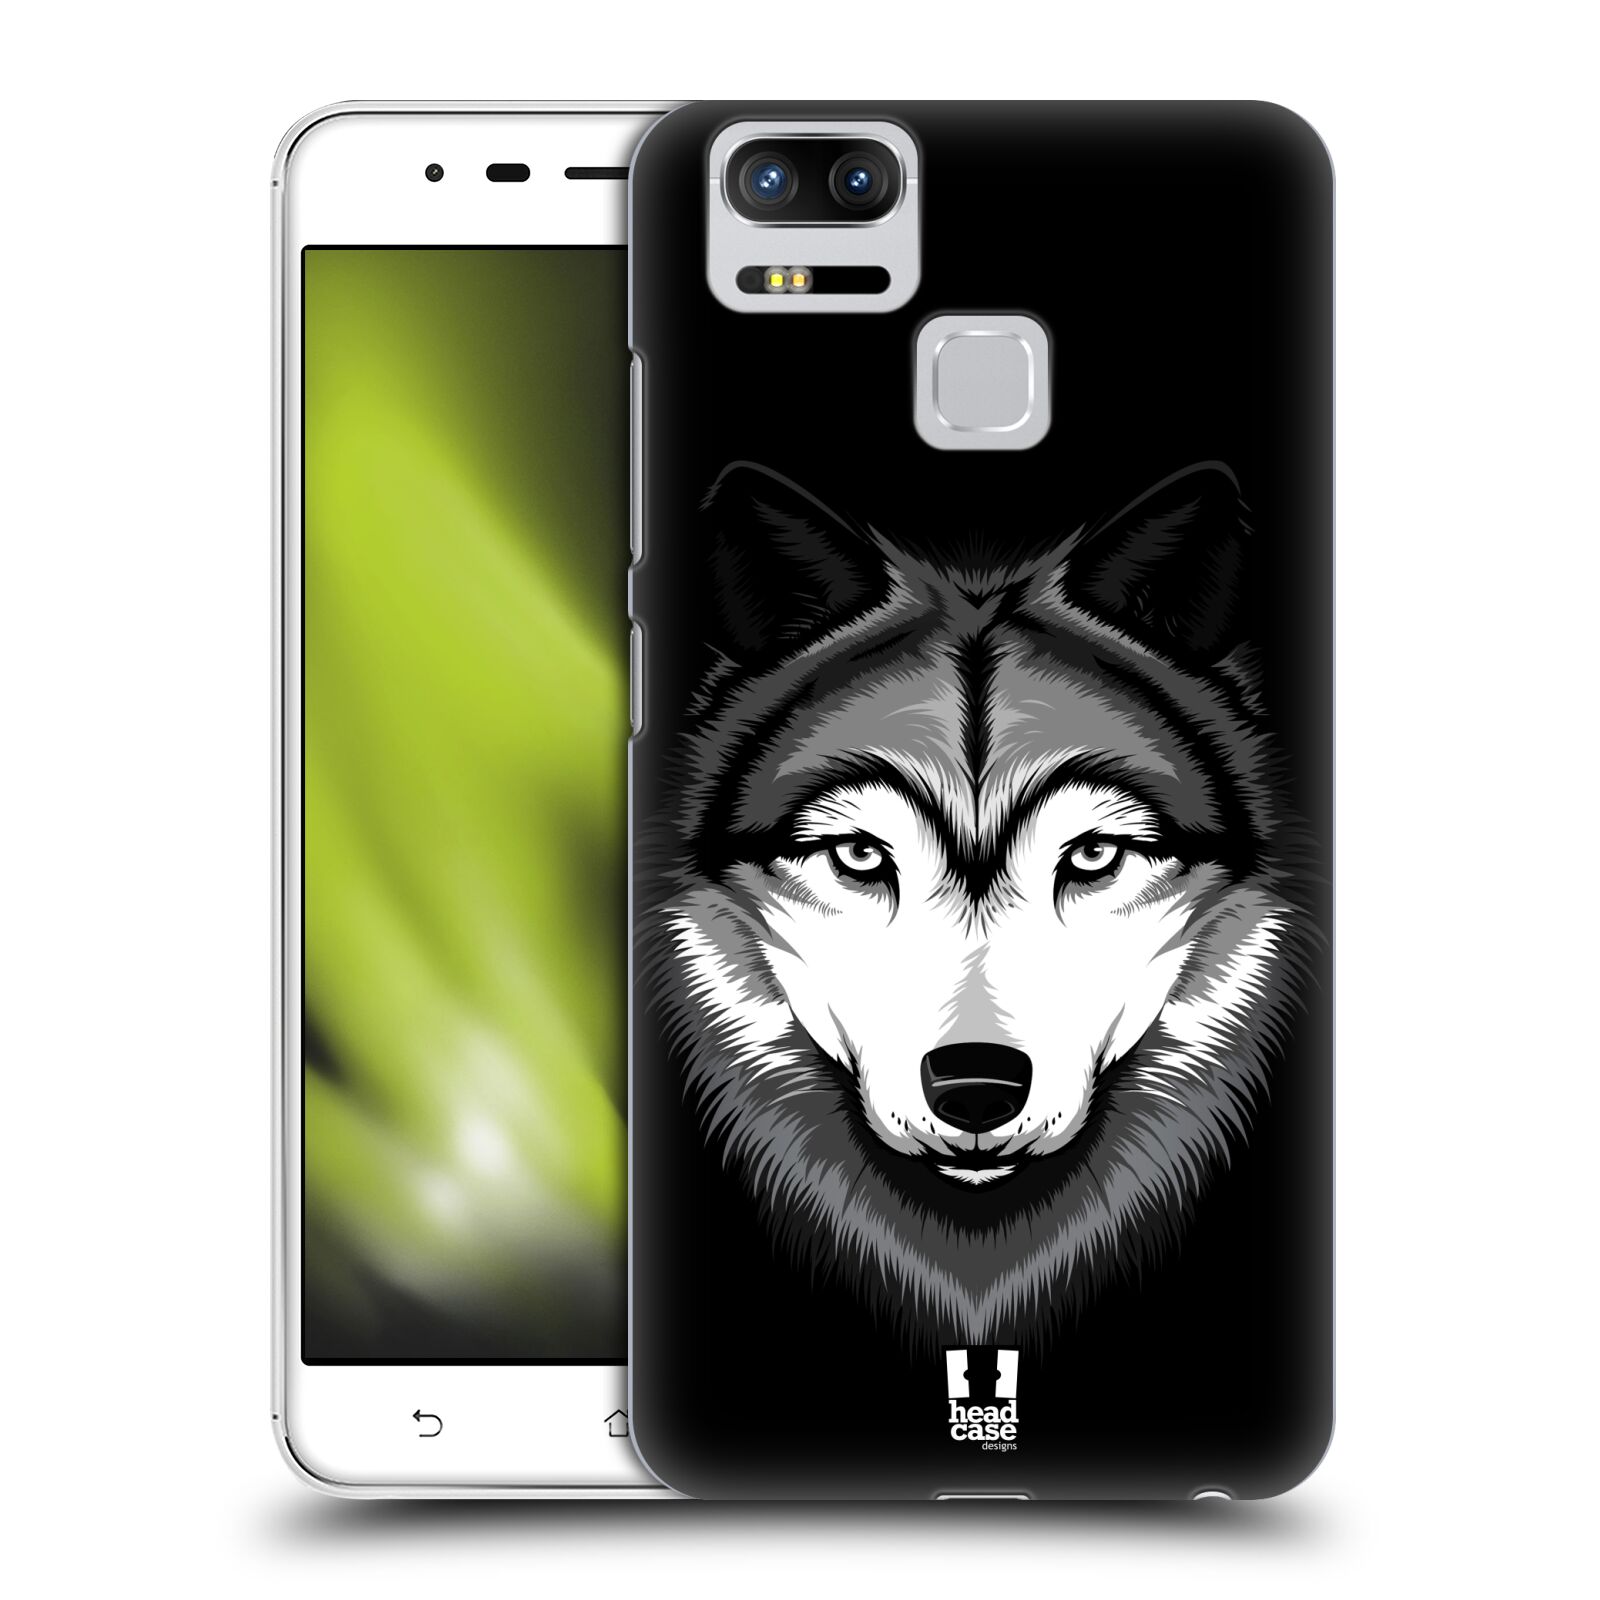 HEAD CASE plastový obal na mobil Asus Zenfone 3 Zoom ZE553KL vzor Zvíře kreslená tvář 2 vlk